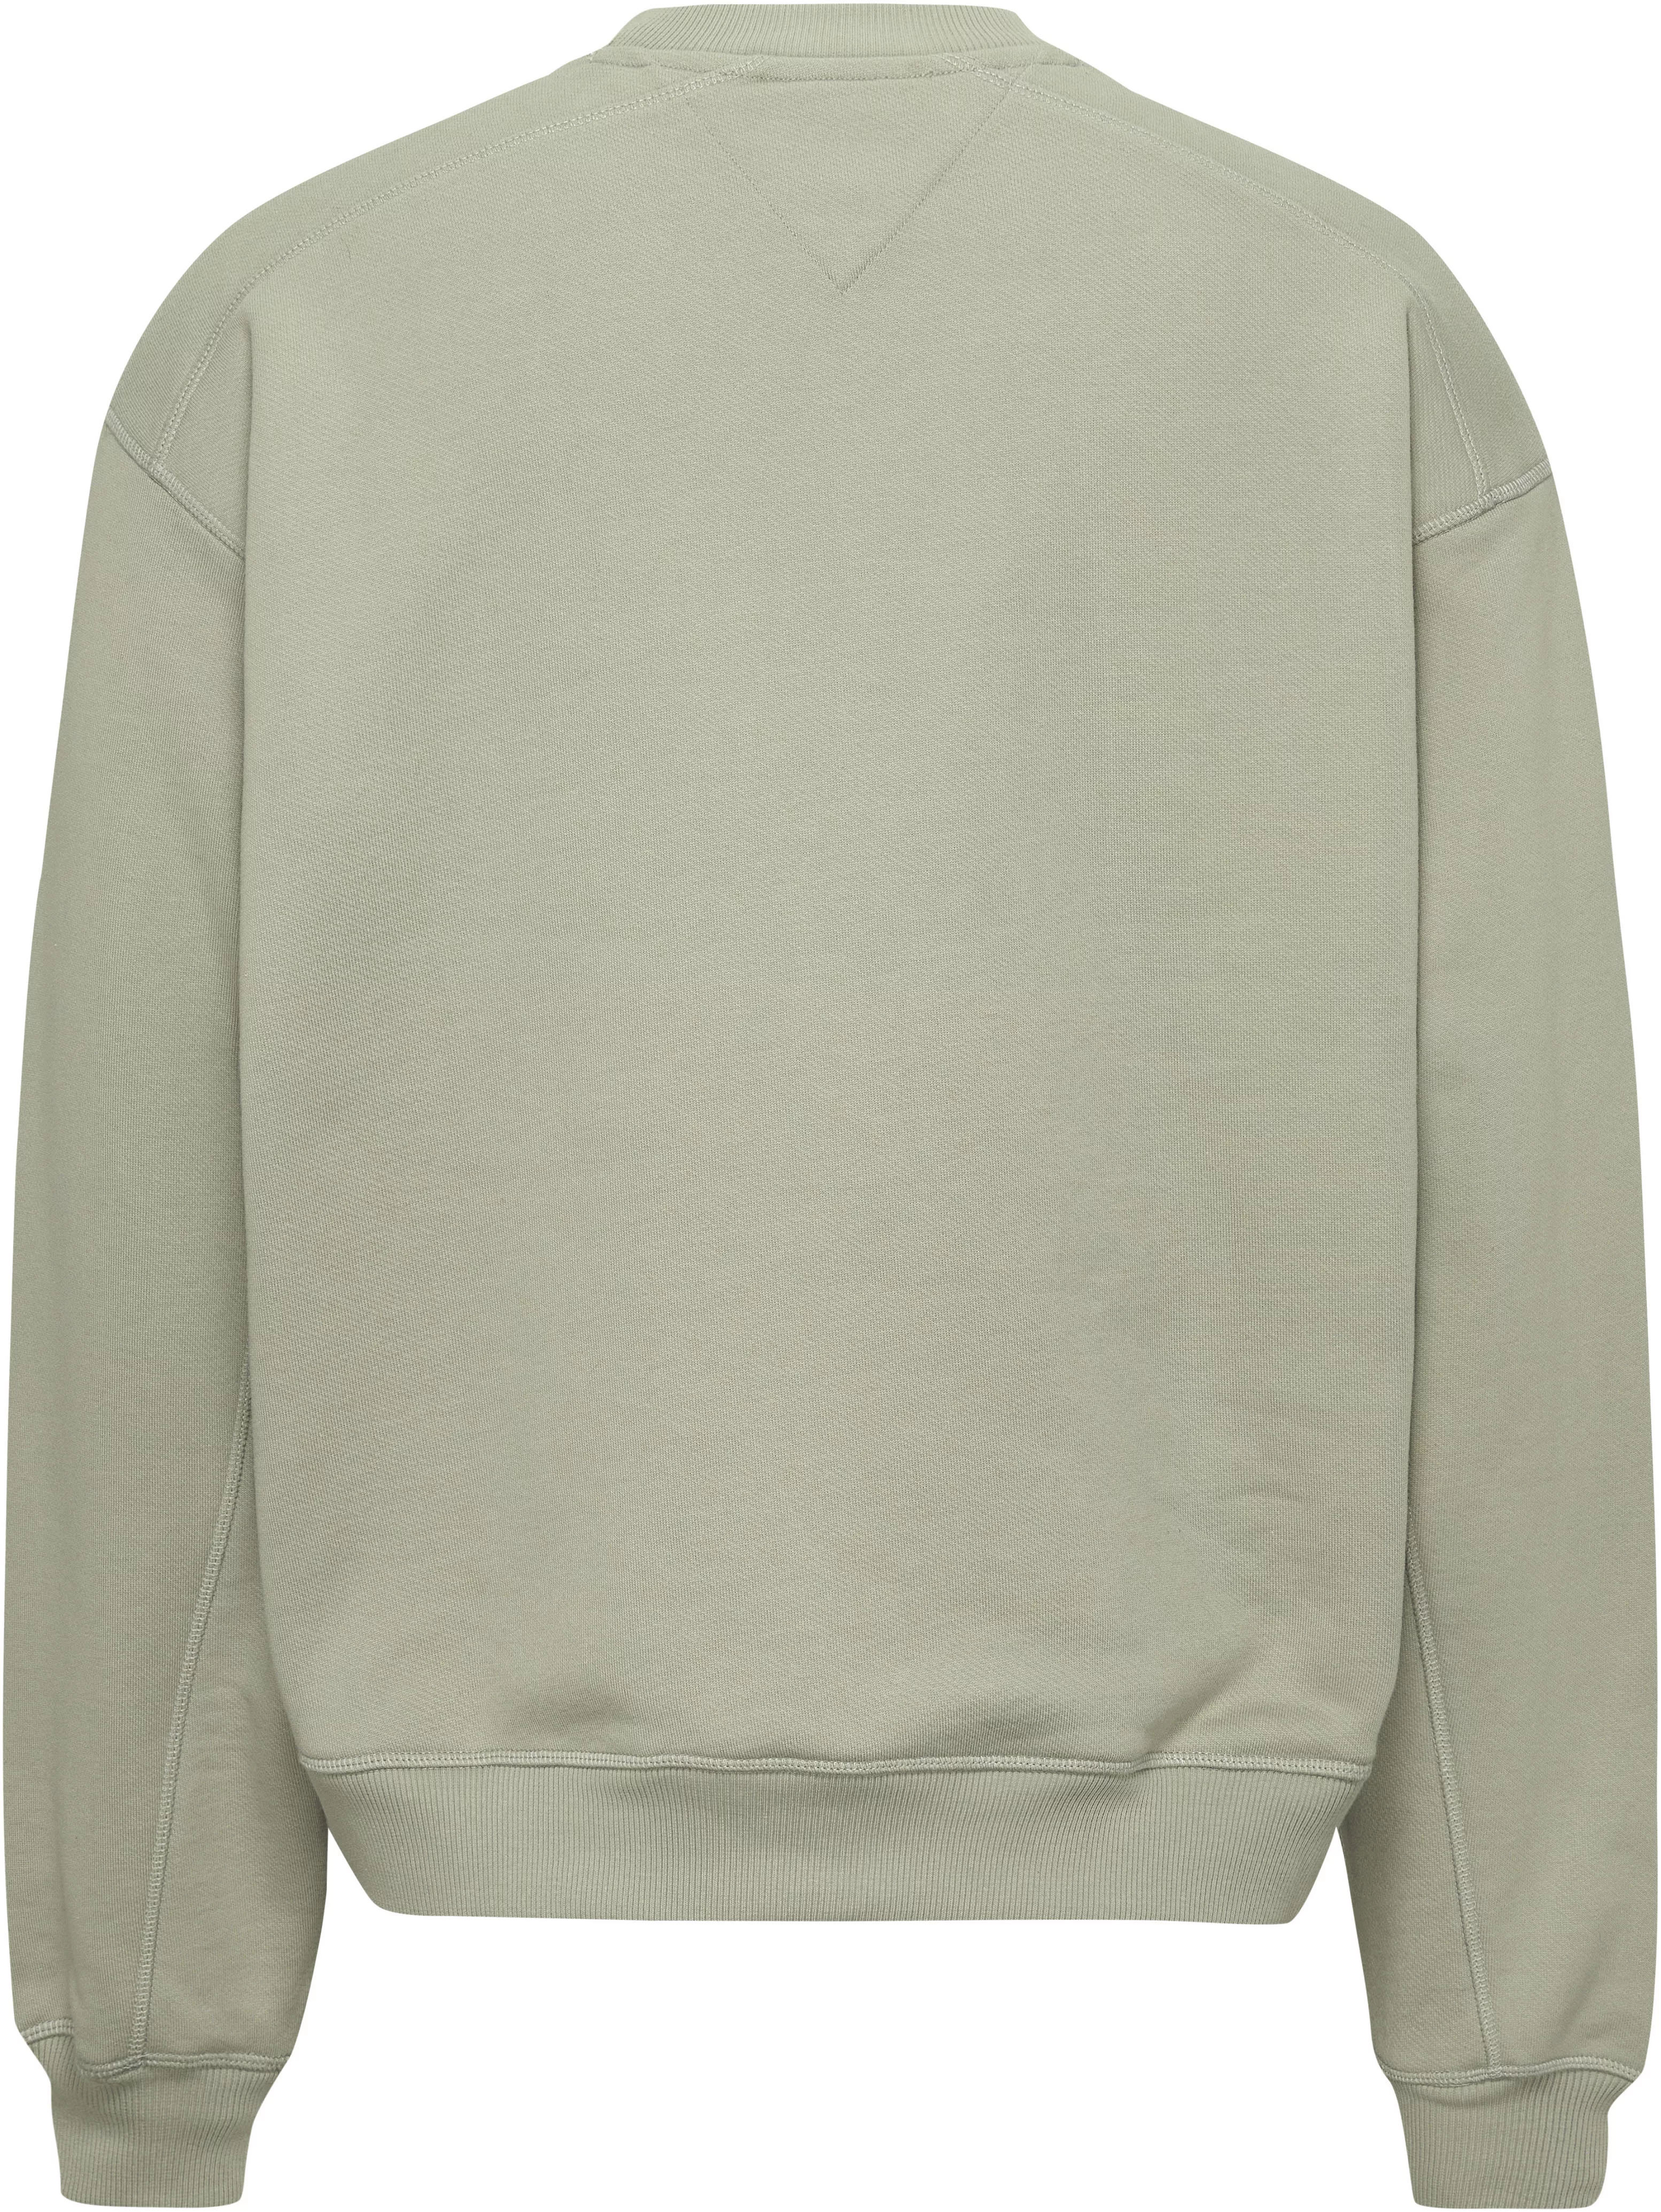 Tommy Jeans Sweater TJM BOXY NEW CLASSICS CREW EXT mit Print auf der Brust günstig online kaufen